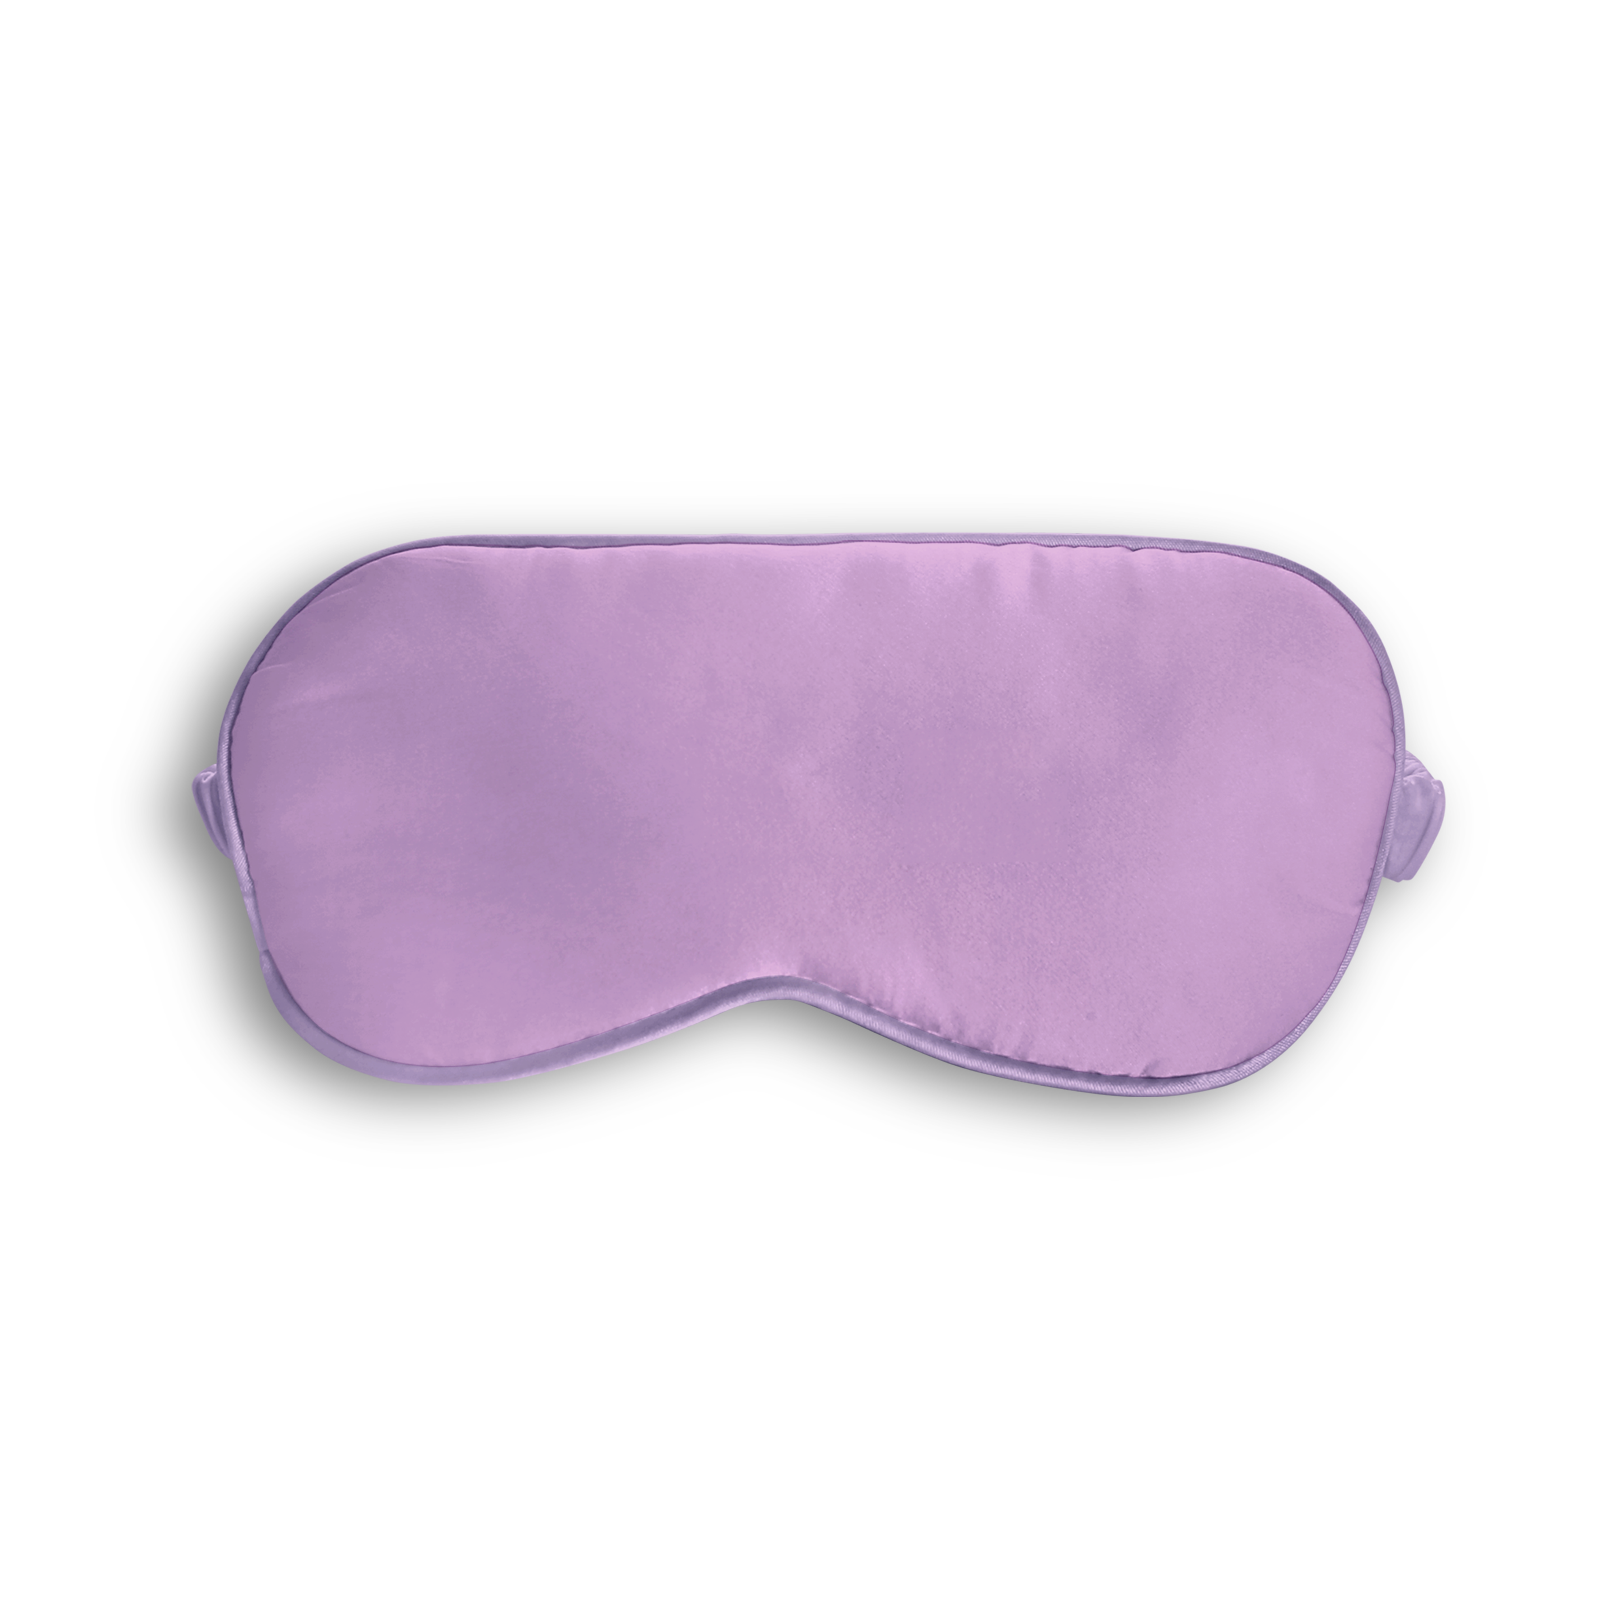 Silk Sleep Mask (Purple)